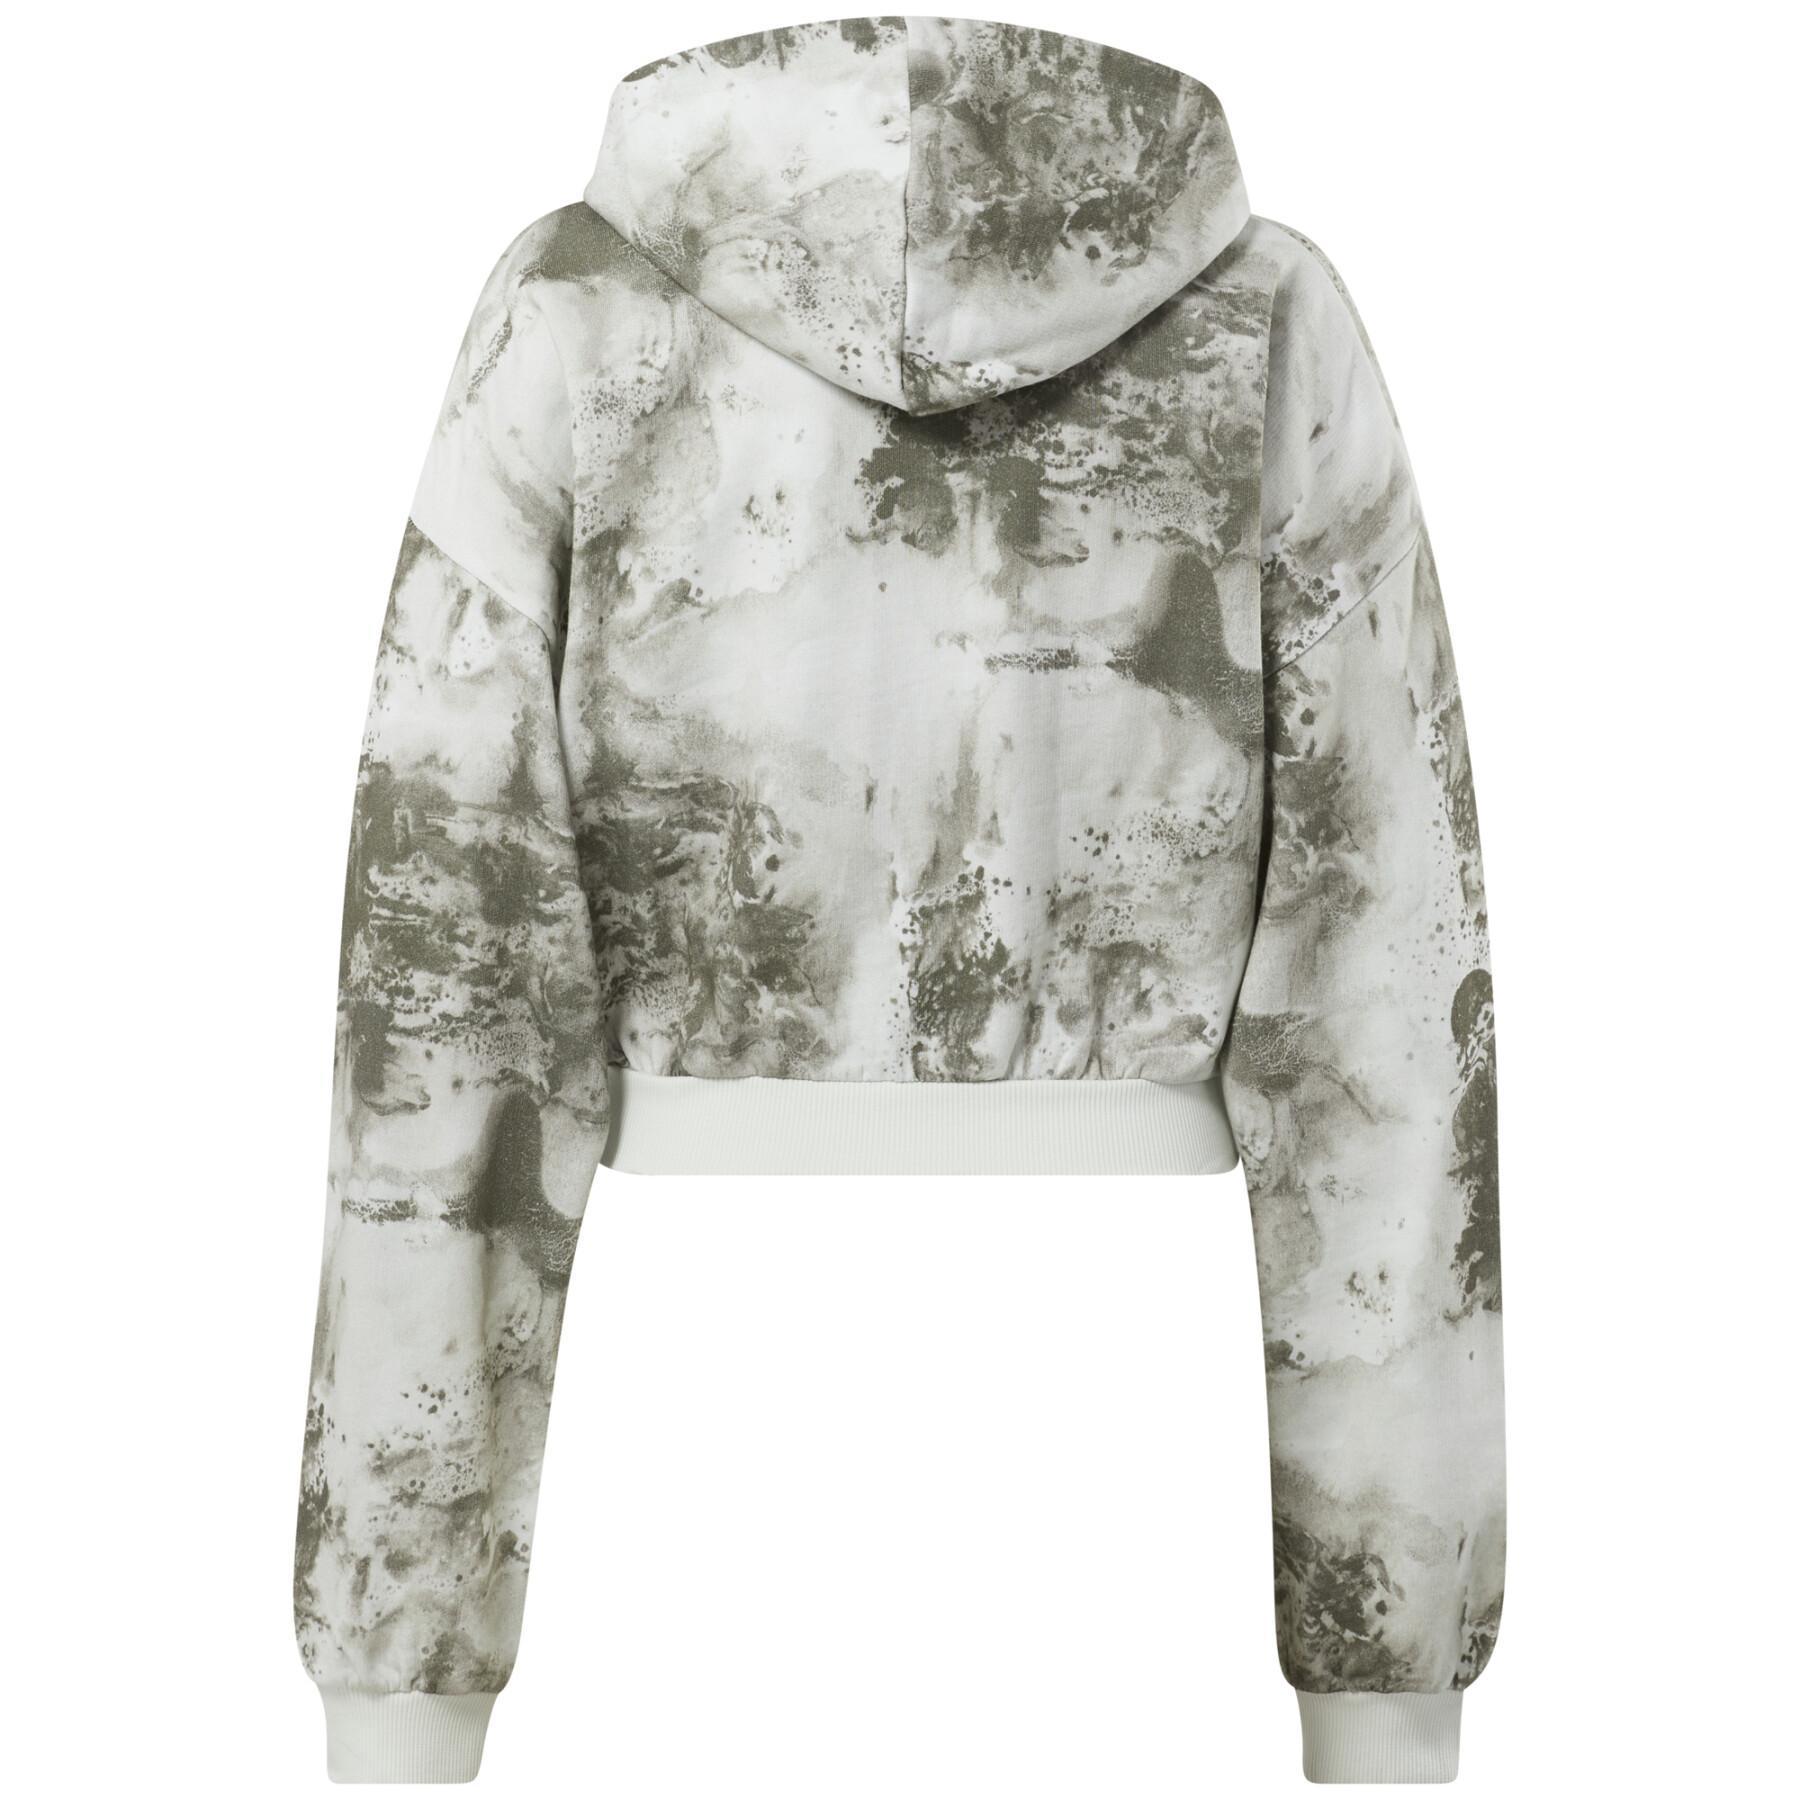 Women's zip-up sweatshirt Reebok Cloud